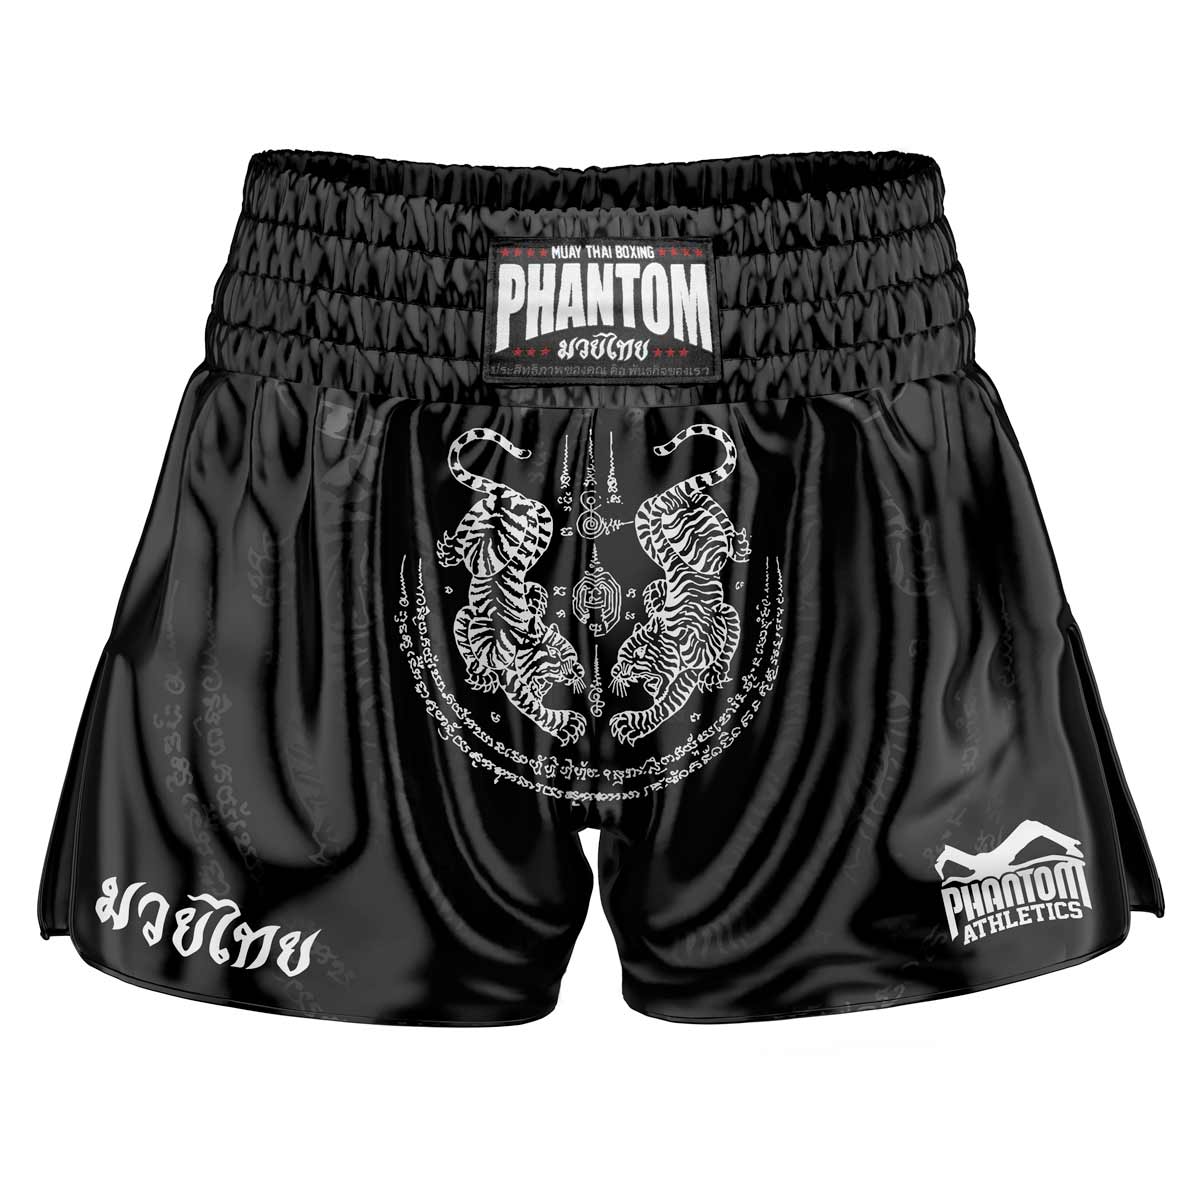 Phantom Муаи Тхаи шорц САК ИАНТ у црној боји. Сатенска тканина старе школе са традиционалним дизајном тигра даје вам оригиналан осећај Тајланда. У уобичајеном квалитету Phantom Athletics . Идеално за ваш тренинг и такмичење у тајландском боксу.